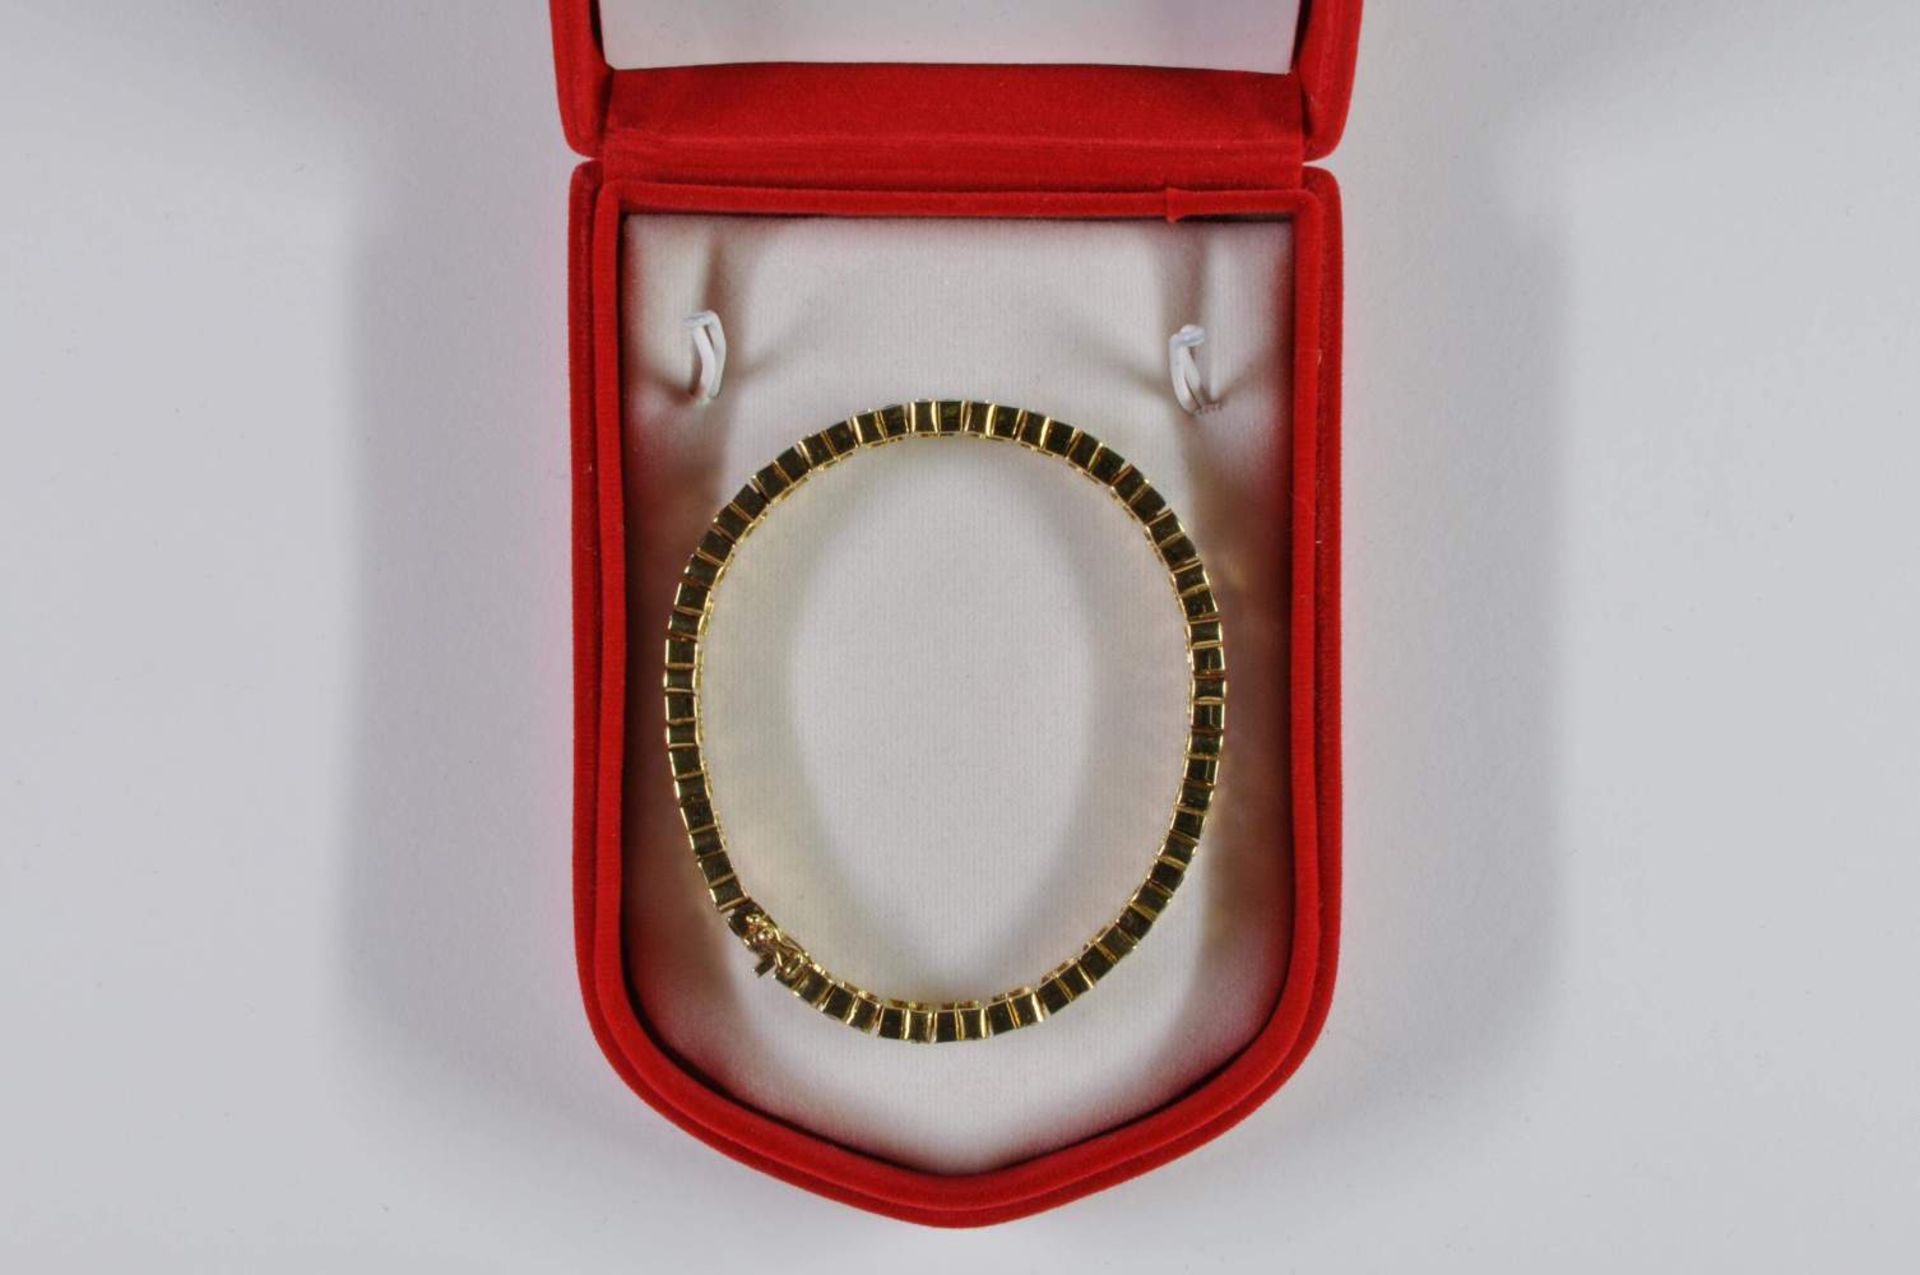 Saphir-Brillant-Armband, 750 Gelbgold, Punze, 66 Brillanten von zus. ca. 3,2ct, 64 Saphiren von zus. - Bild 17 aus 20